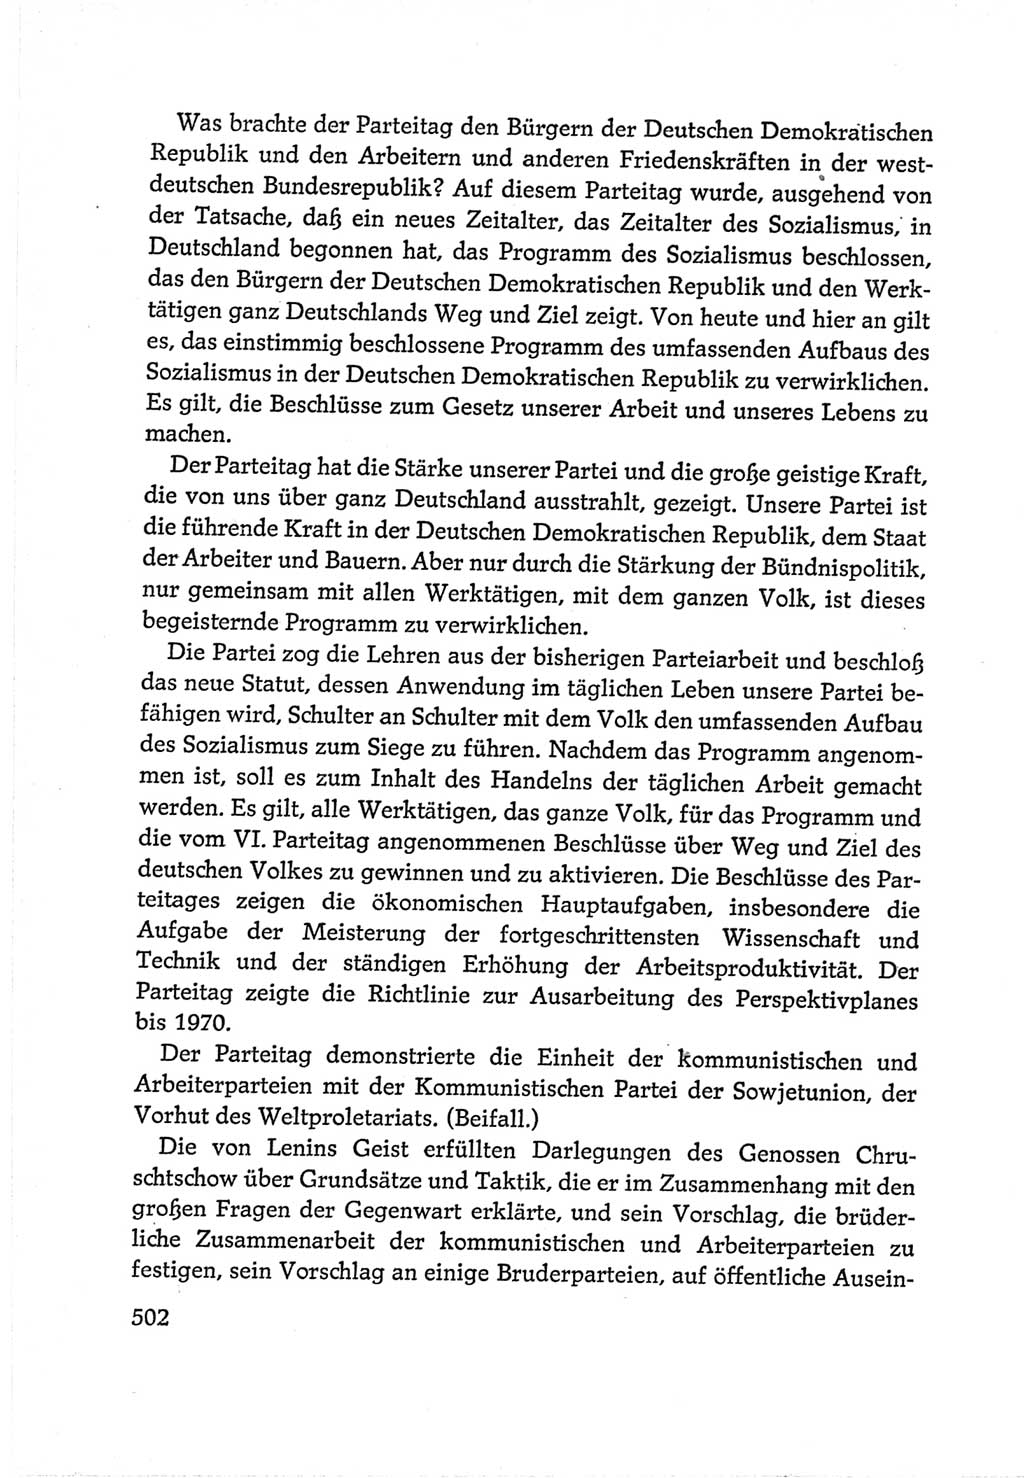 Protokoll der Verhandlungen des Ⅵ. Parteitages der Sozialistischen Einheitspartei Deutschlands (SED) [Deutsche Demokratische Republik (DDR)] 1963, Band Ⅱ, Seite 502 (Prot. Verh. Ⅵ. PT SED DDR 1963, Bd. Ⅱ, S. 502)